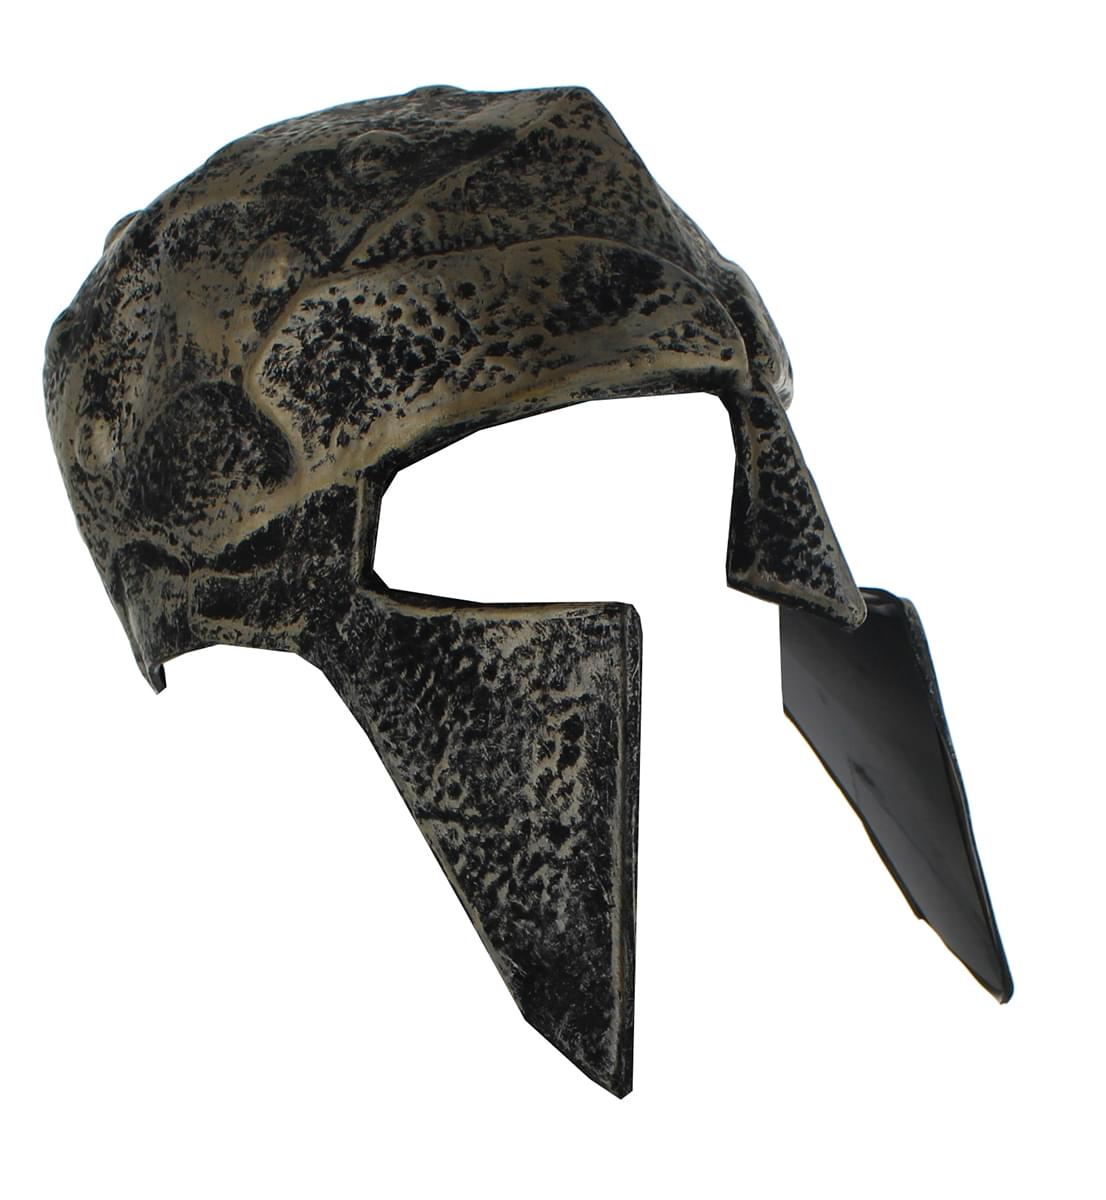 Spartan Adult Costume Helmet